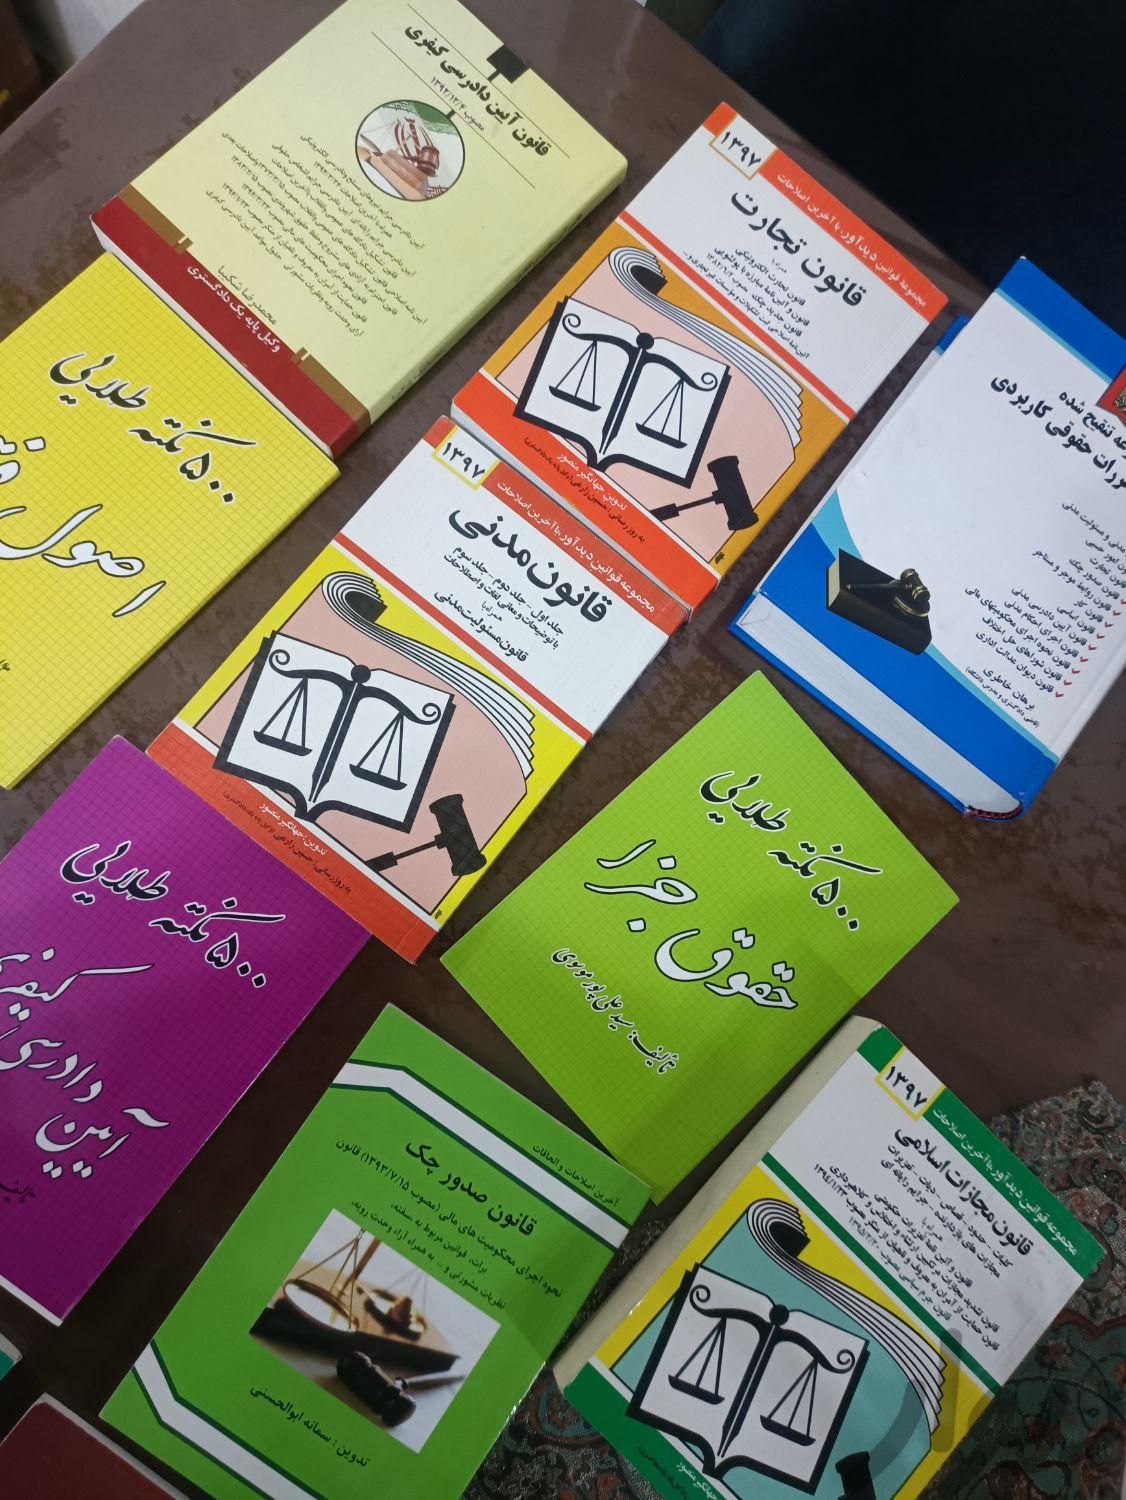 کتاب و جزوات حقوقی وکالت حقوق|کتاب و مجله آموزشی|تهران, پیروزی|دیوار